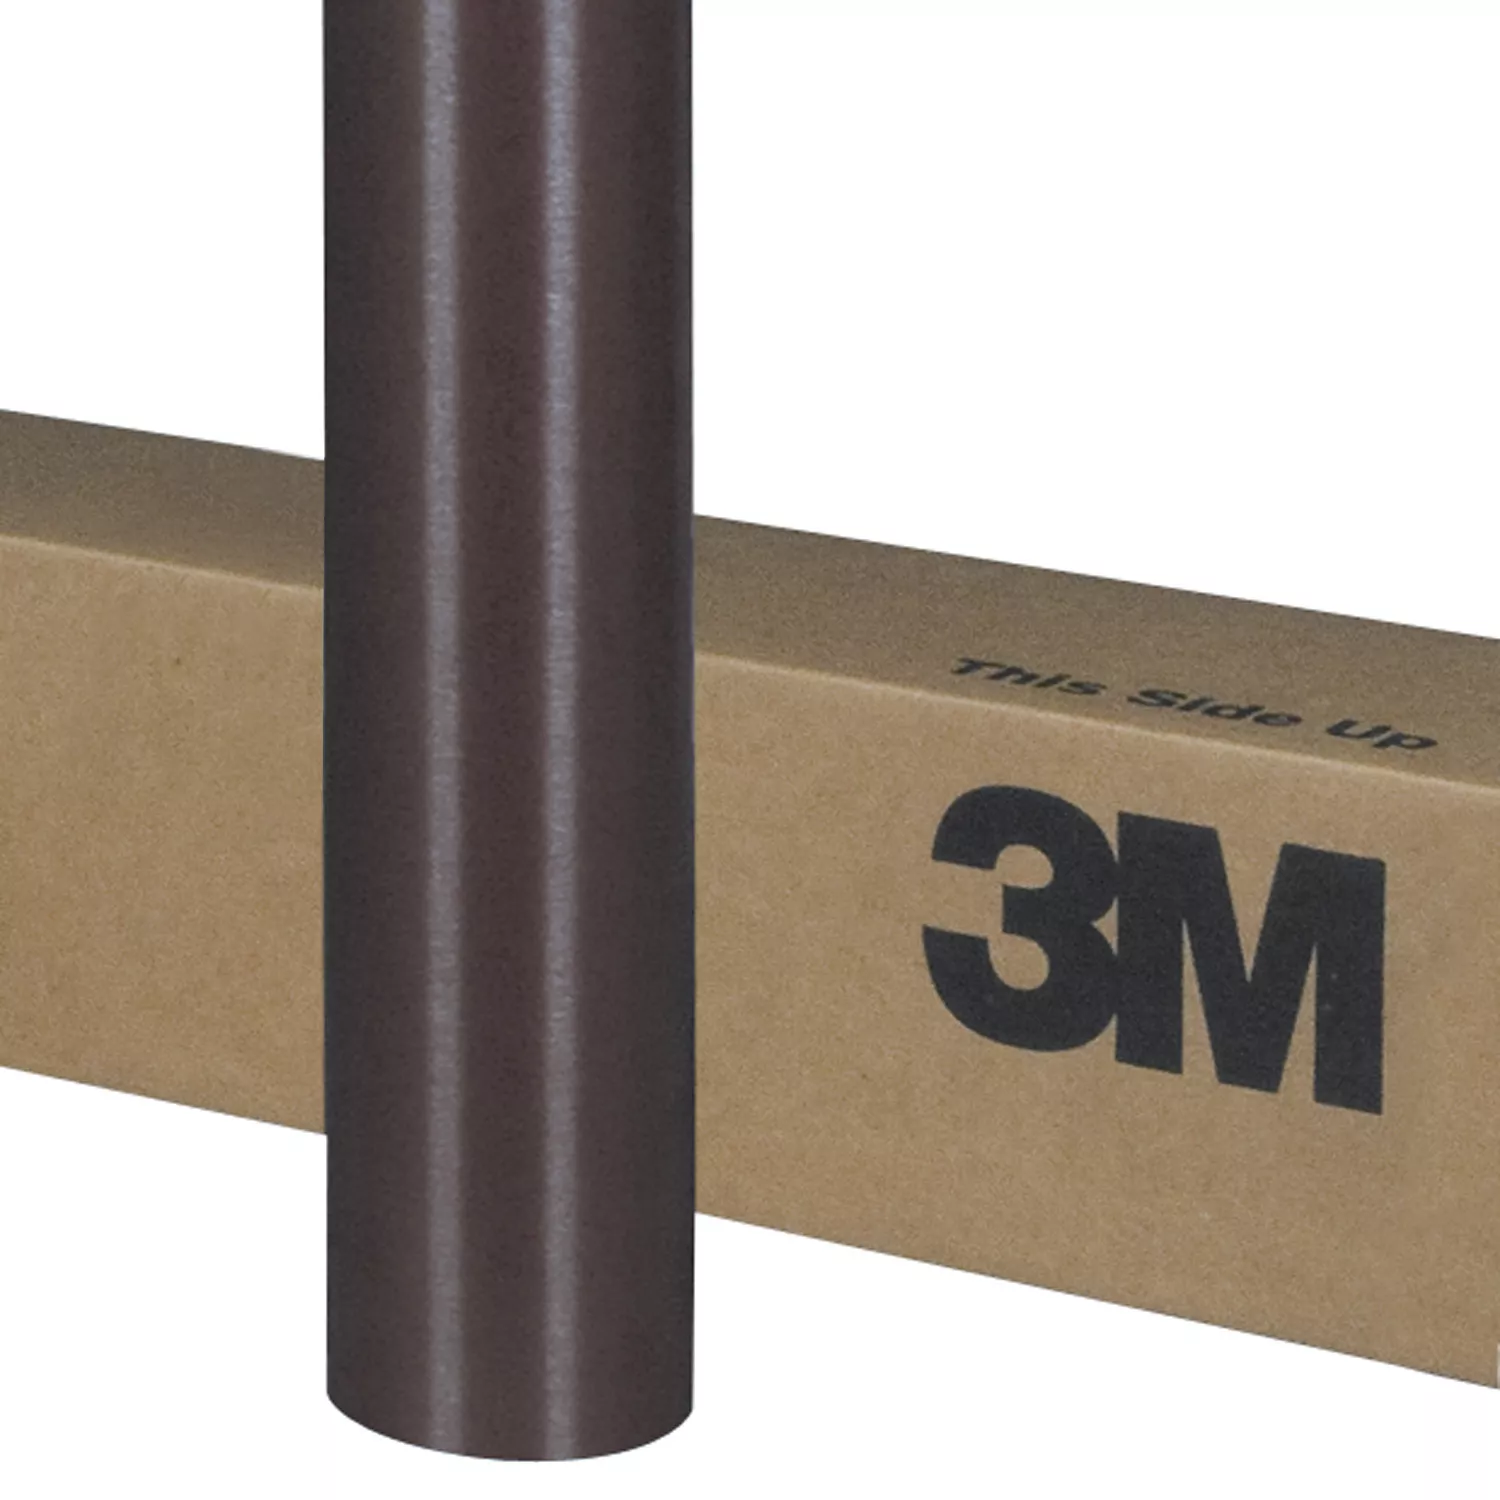 3M™ Wrap Film Series 1080-M209, Matte Brown Metallic, 60 in x 5 yd